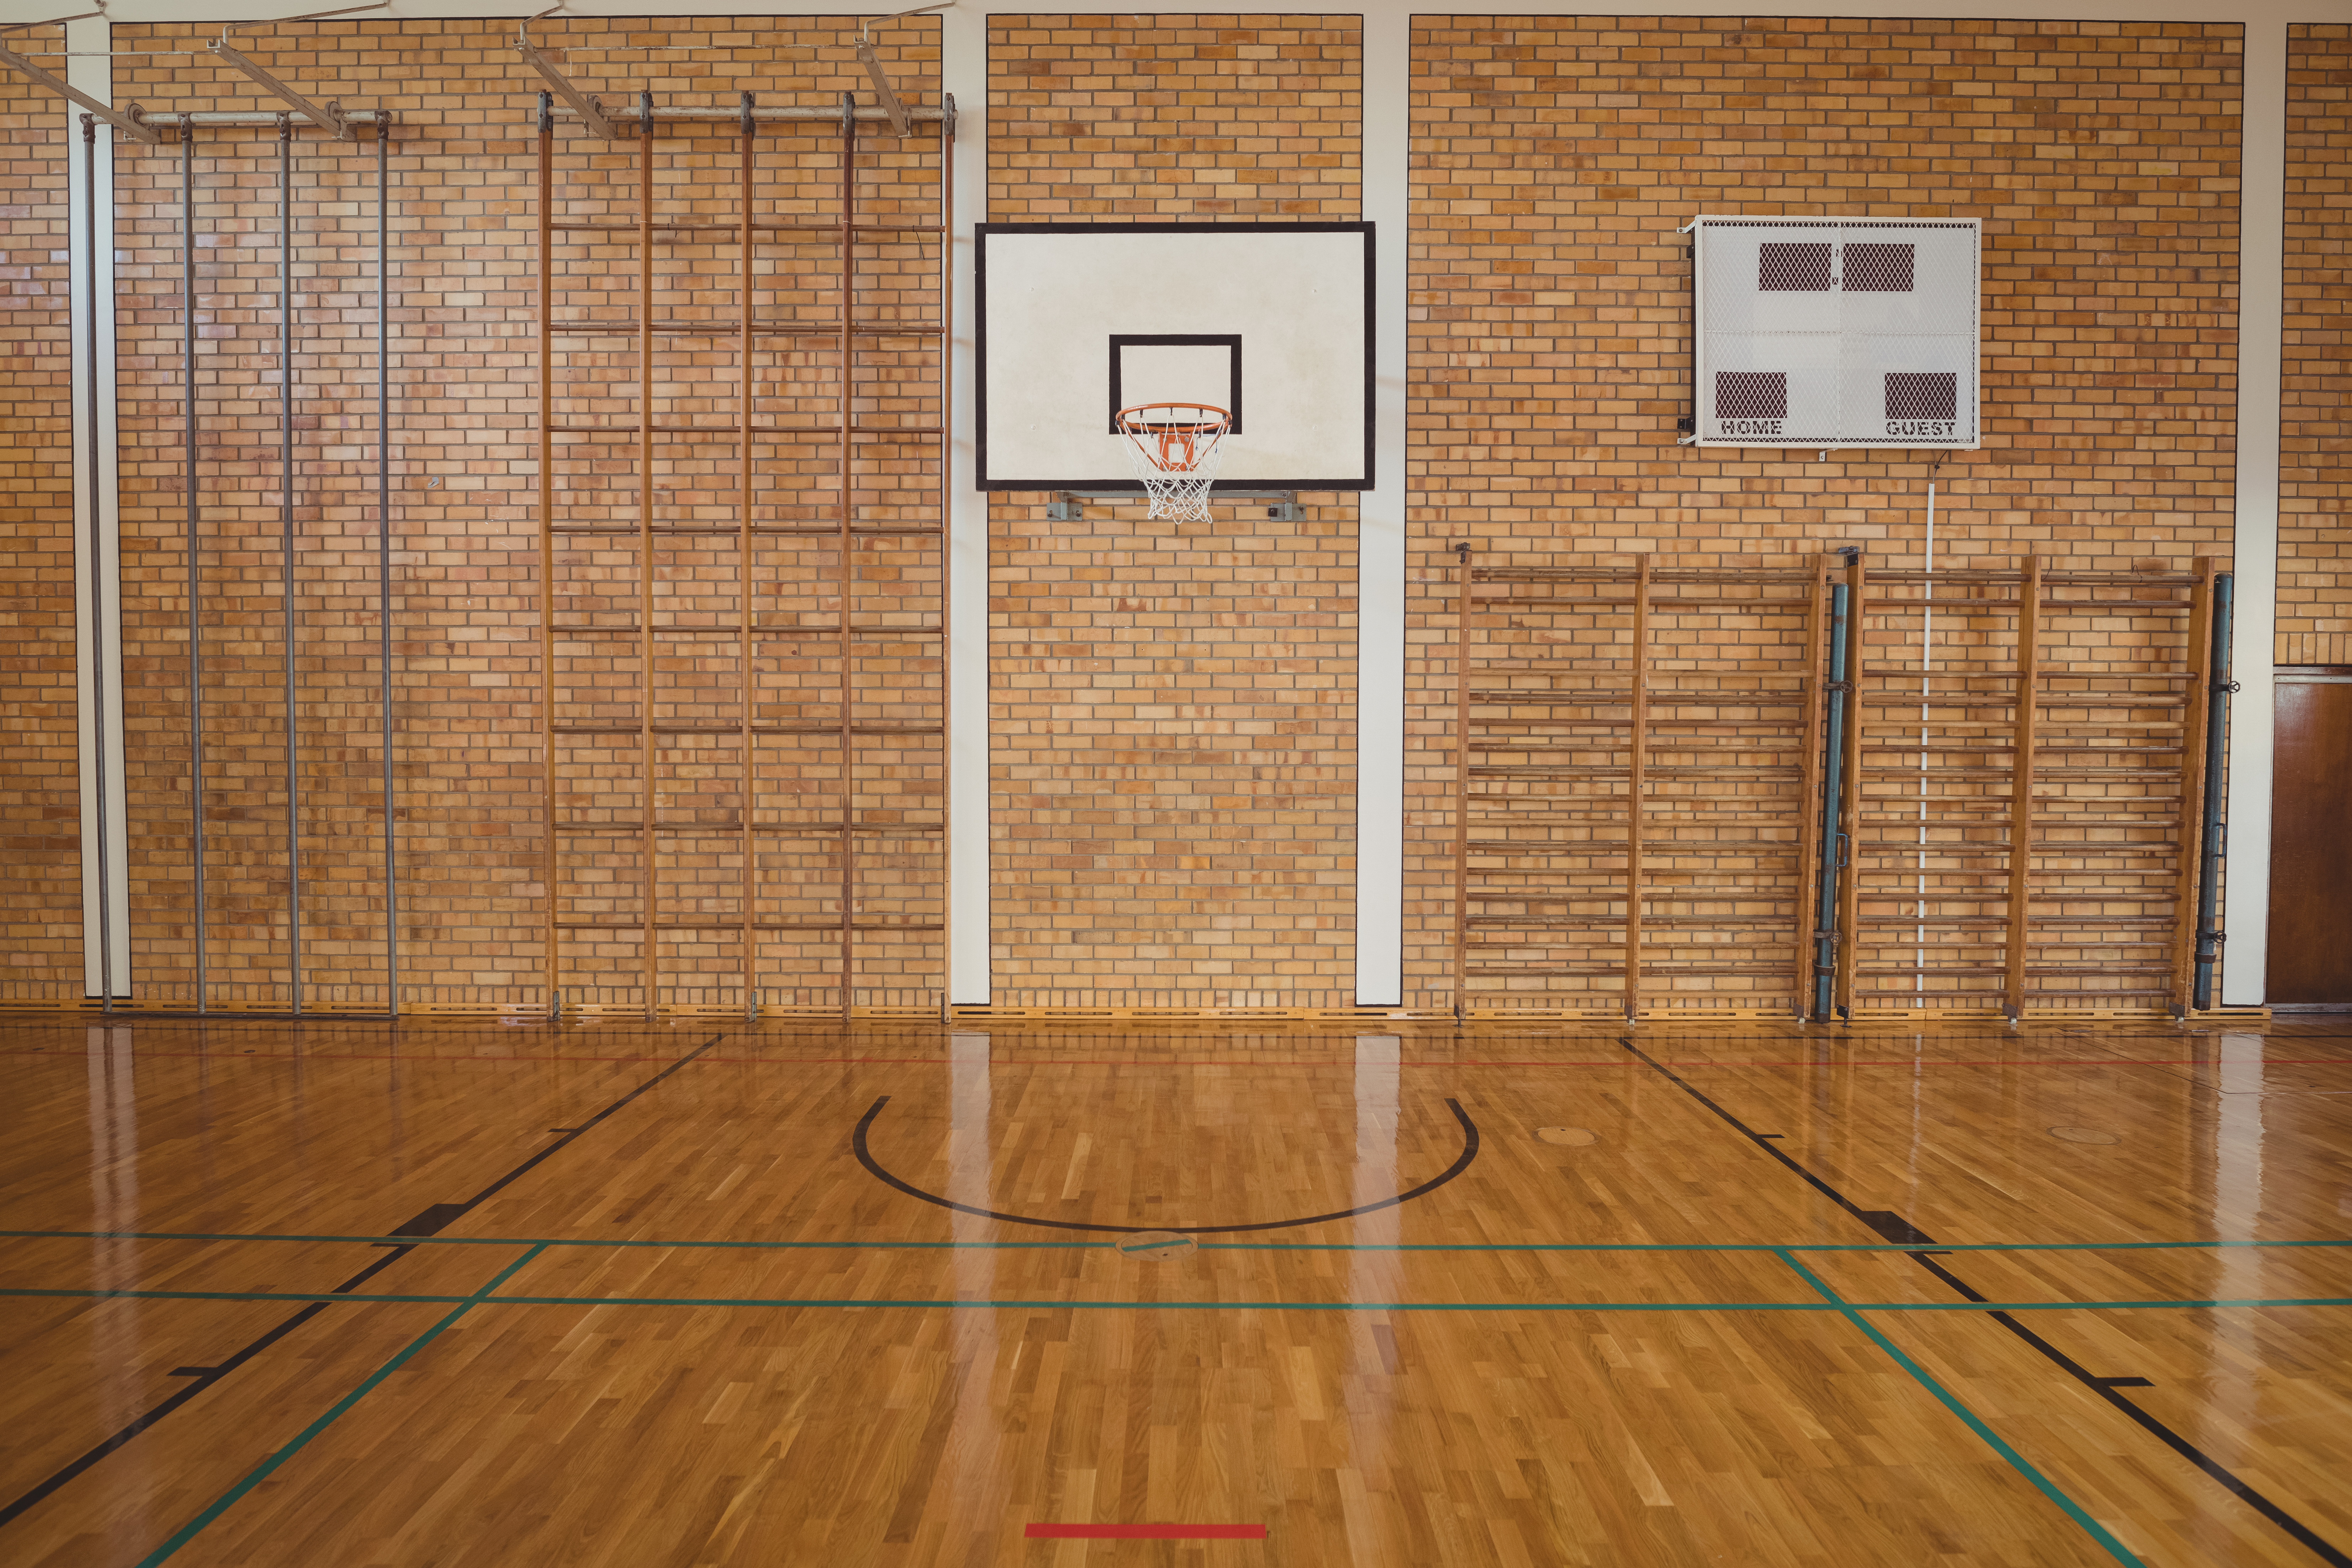 Empty basketball court 2023 11 27 05 16 39 utc
